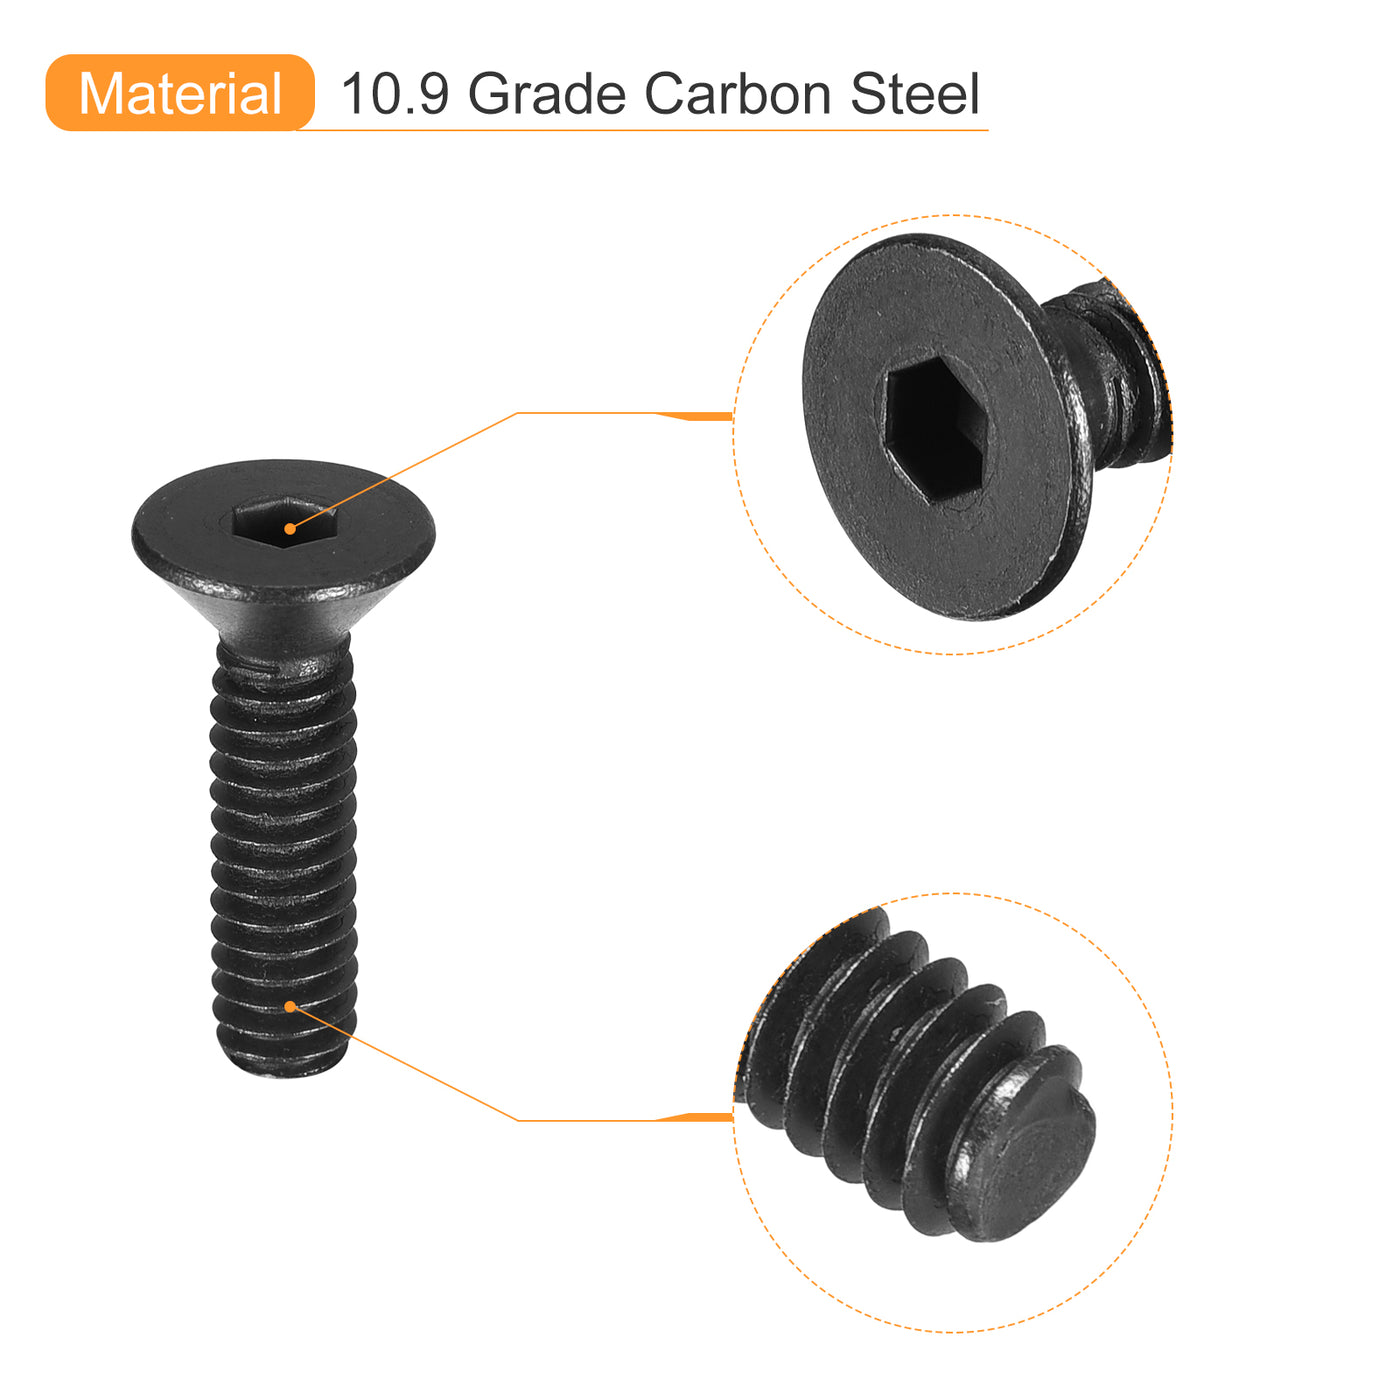 uxcell Uxcell #8-32x5/8" Flat Head Socket Cap Screws, 10.9 Grade Carbon, Black, 20pcs